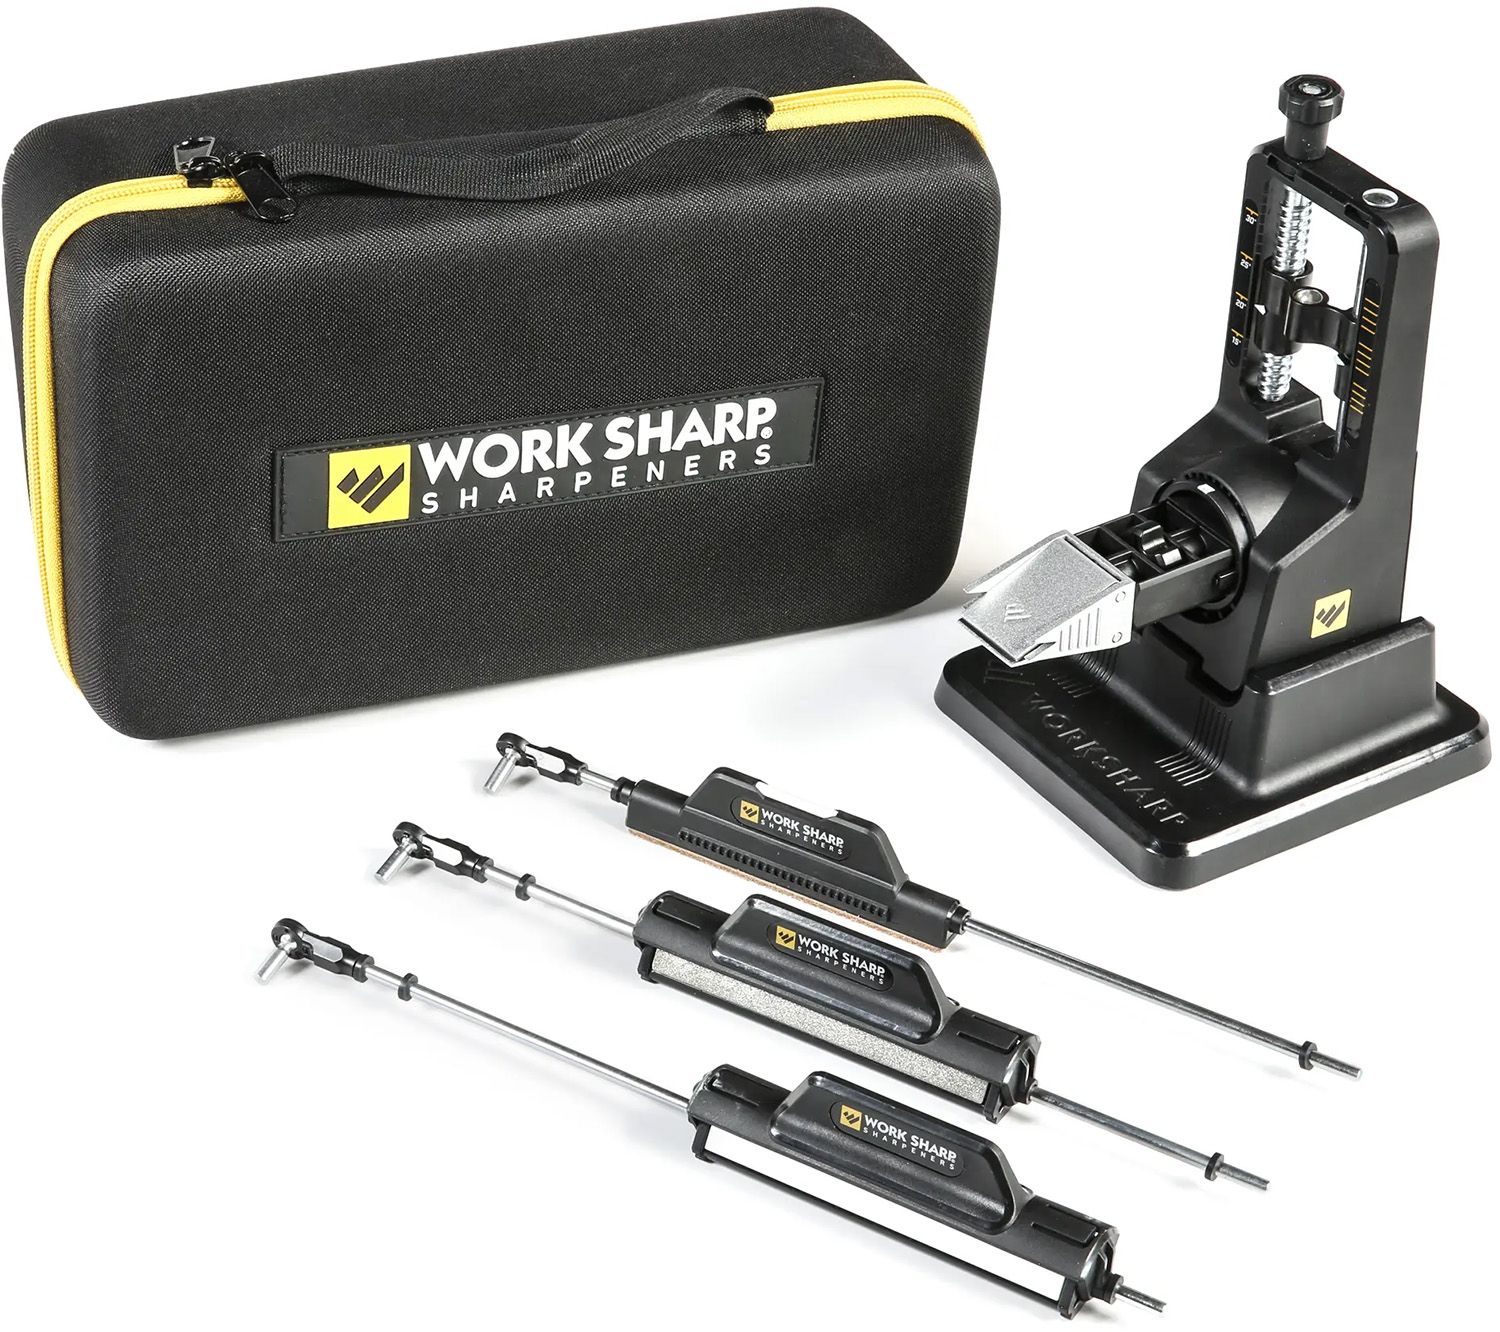 Tool Holder for Work Sharp Precision Adjust Sharpening System